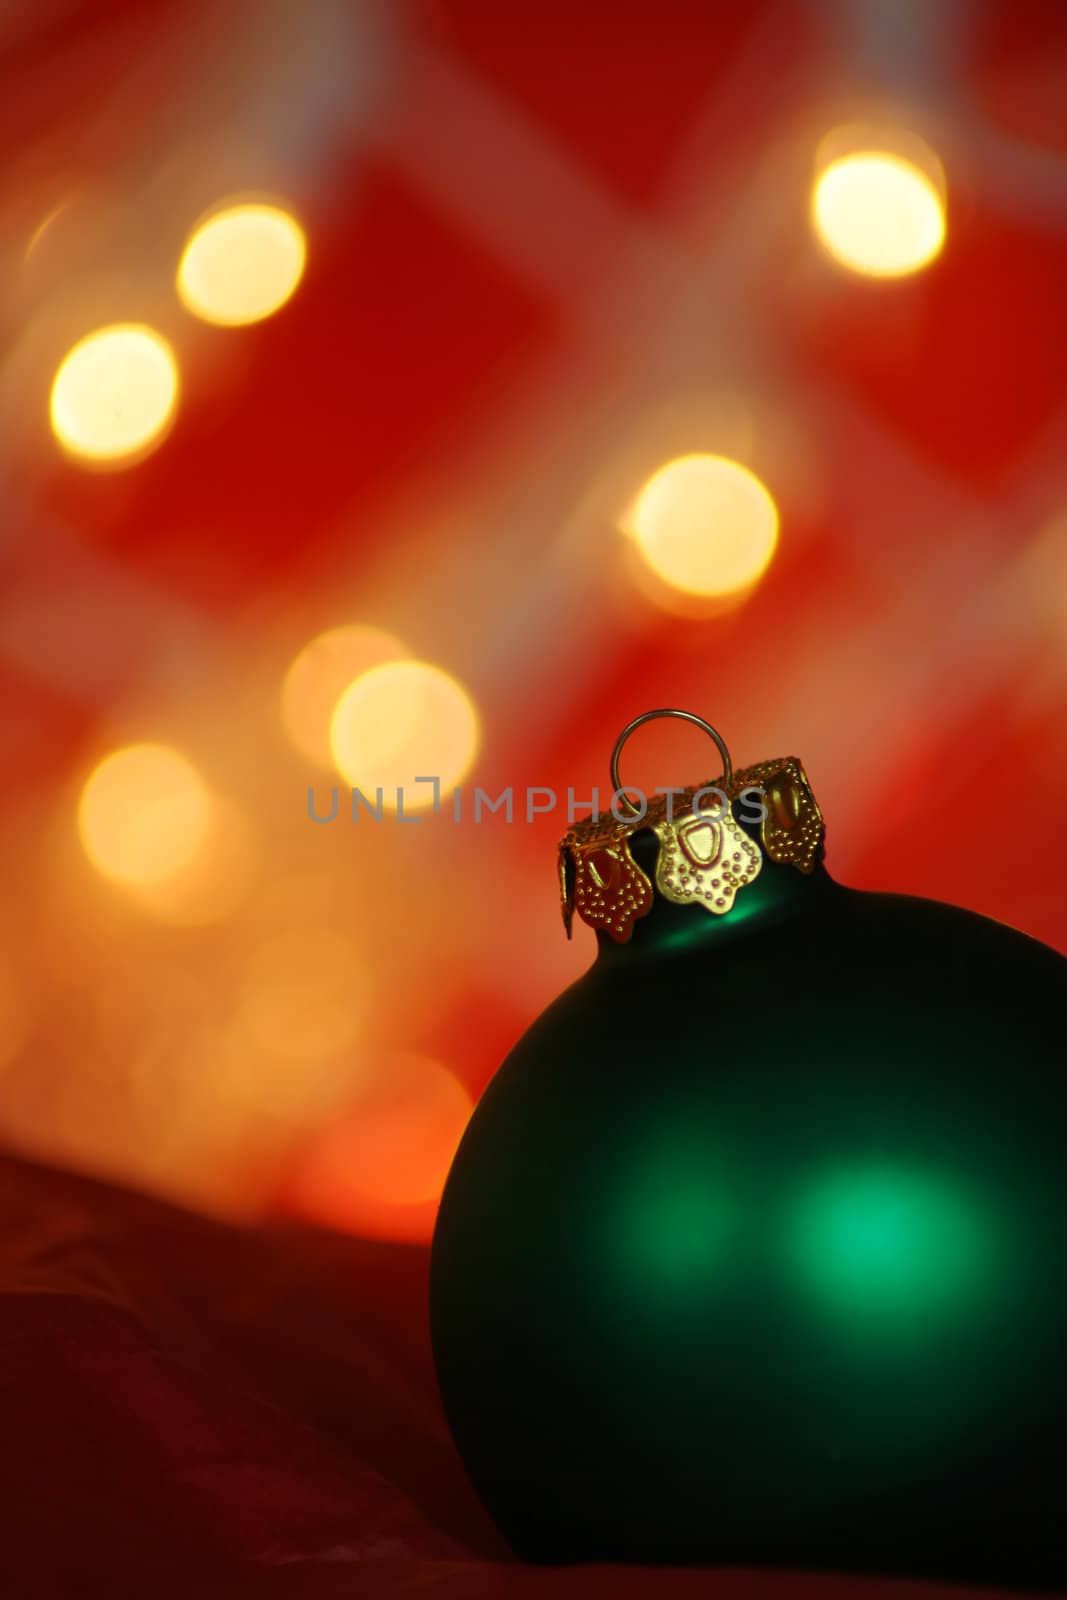 Christmas by thephotoguy